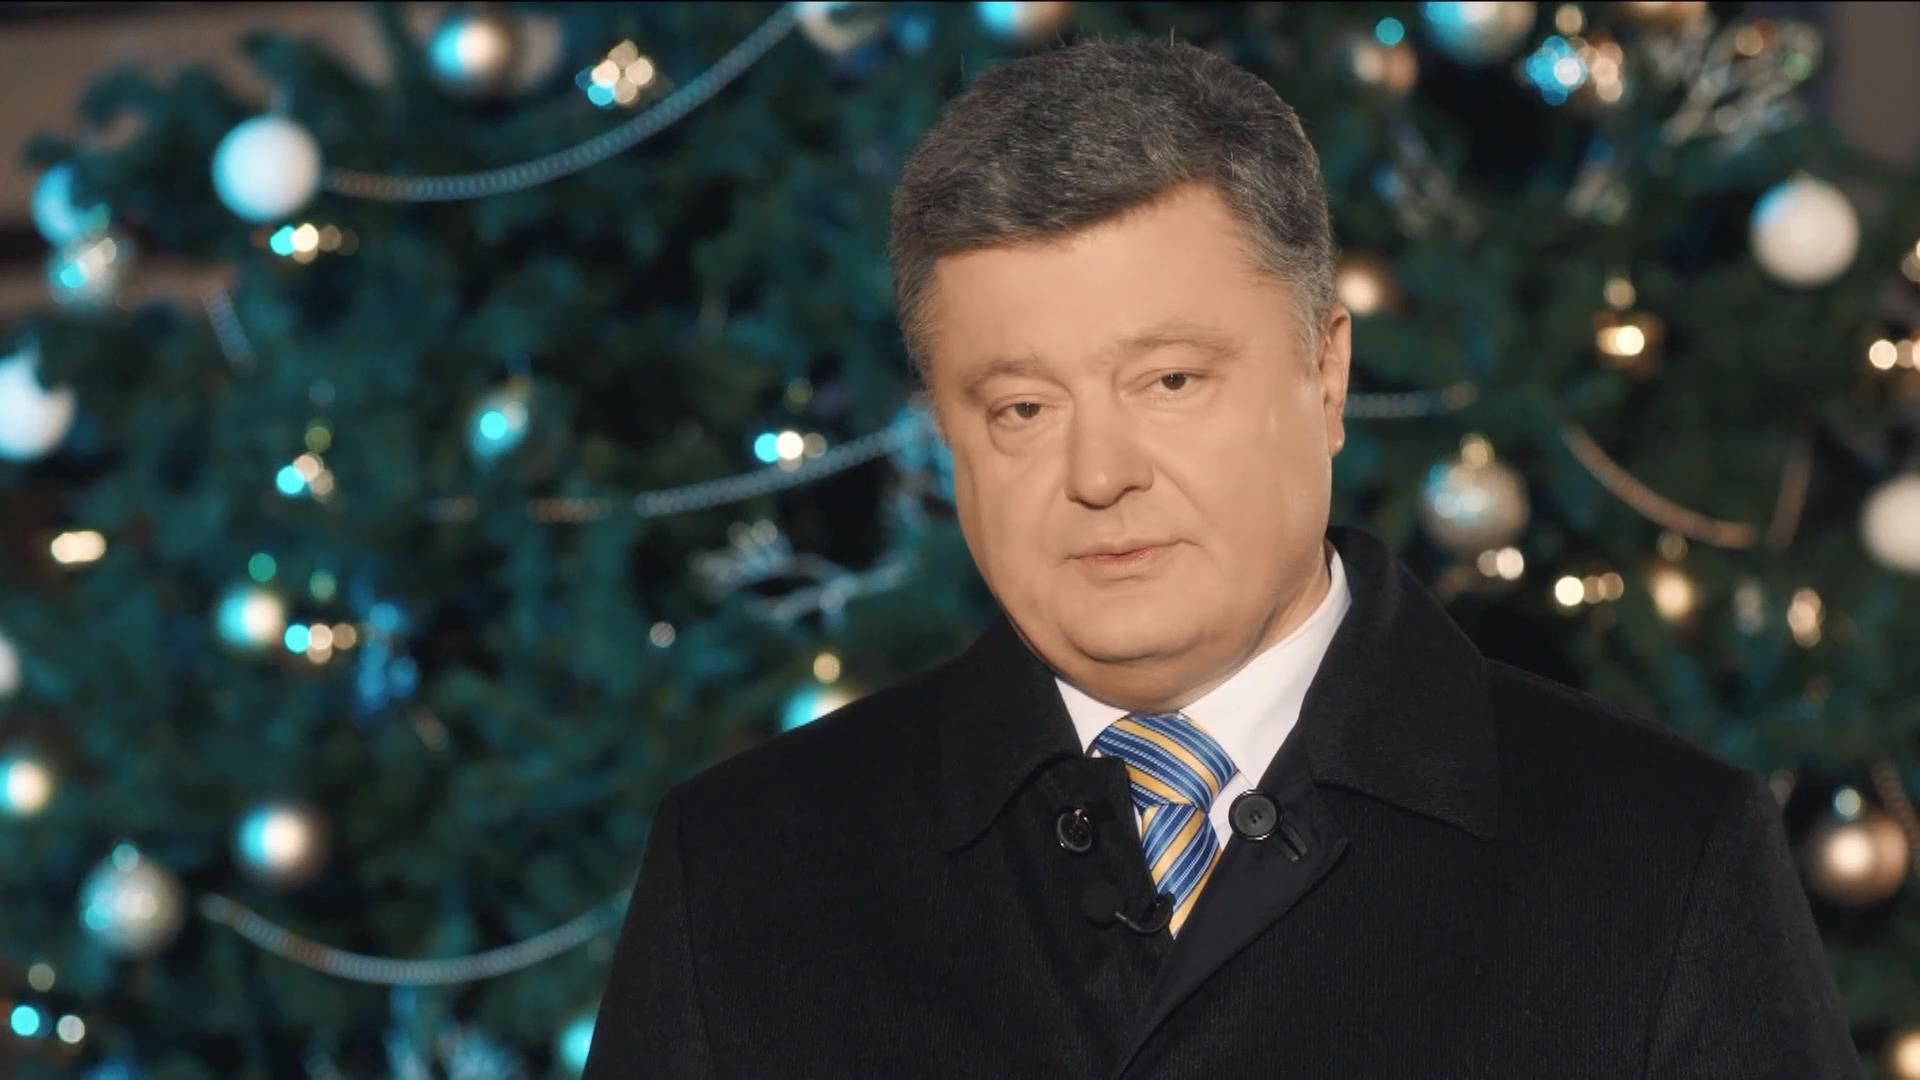 Поздравление Президента Украины Петра Порошенко с Новым Годом - 1 января 2016 - Телеканал новин 24